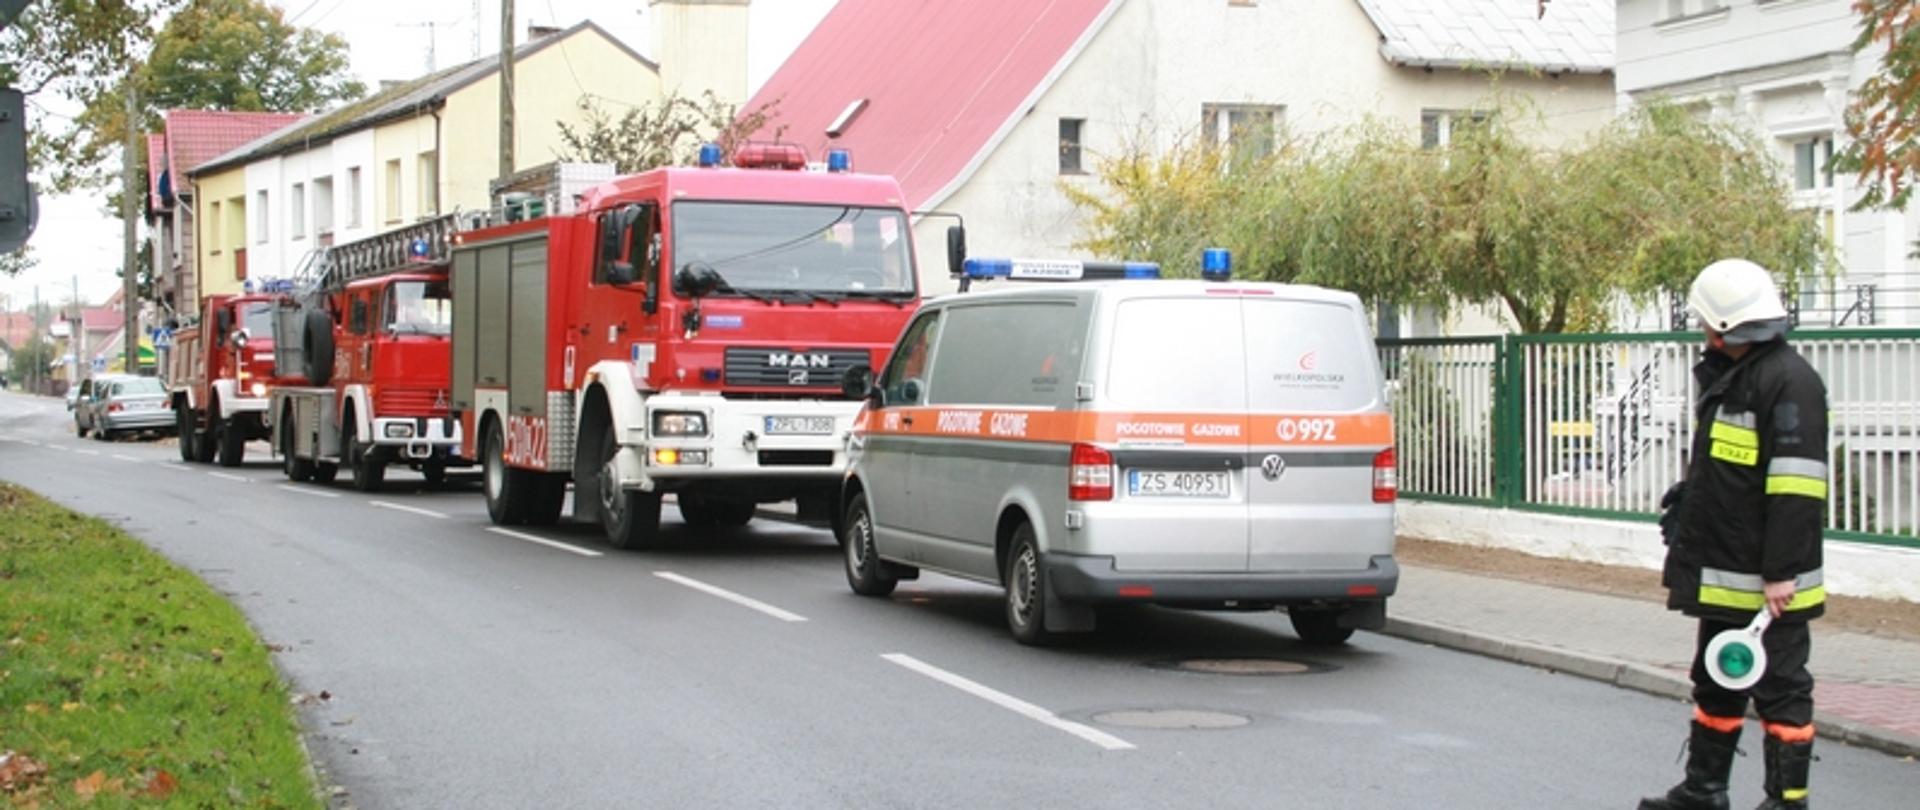 Zdjęcie przedstawia samochody pożarnicze oraz samochód gazowników